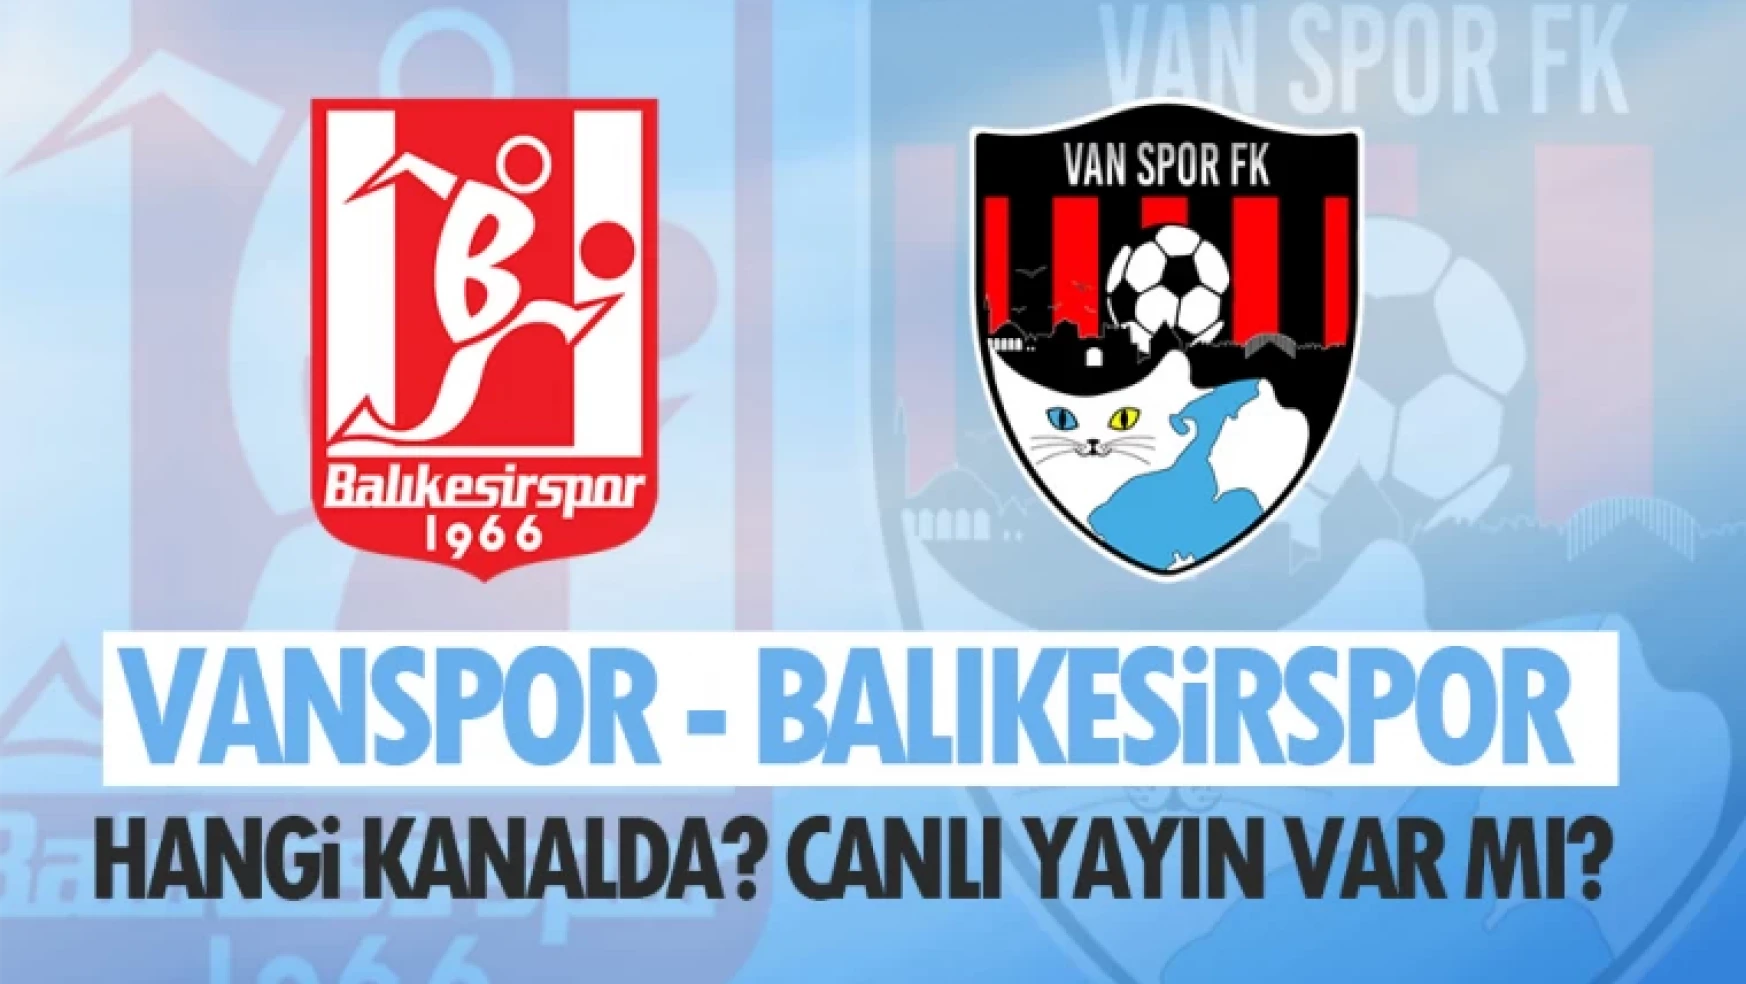 Vanspor - Balıkesirspor maçı hangi kanalda? Canlı yayın var mı?